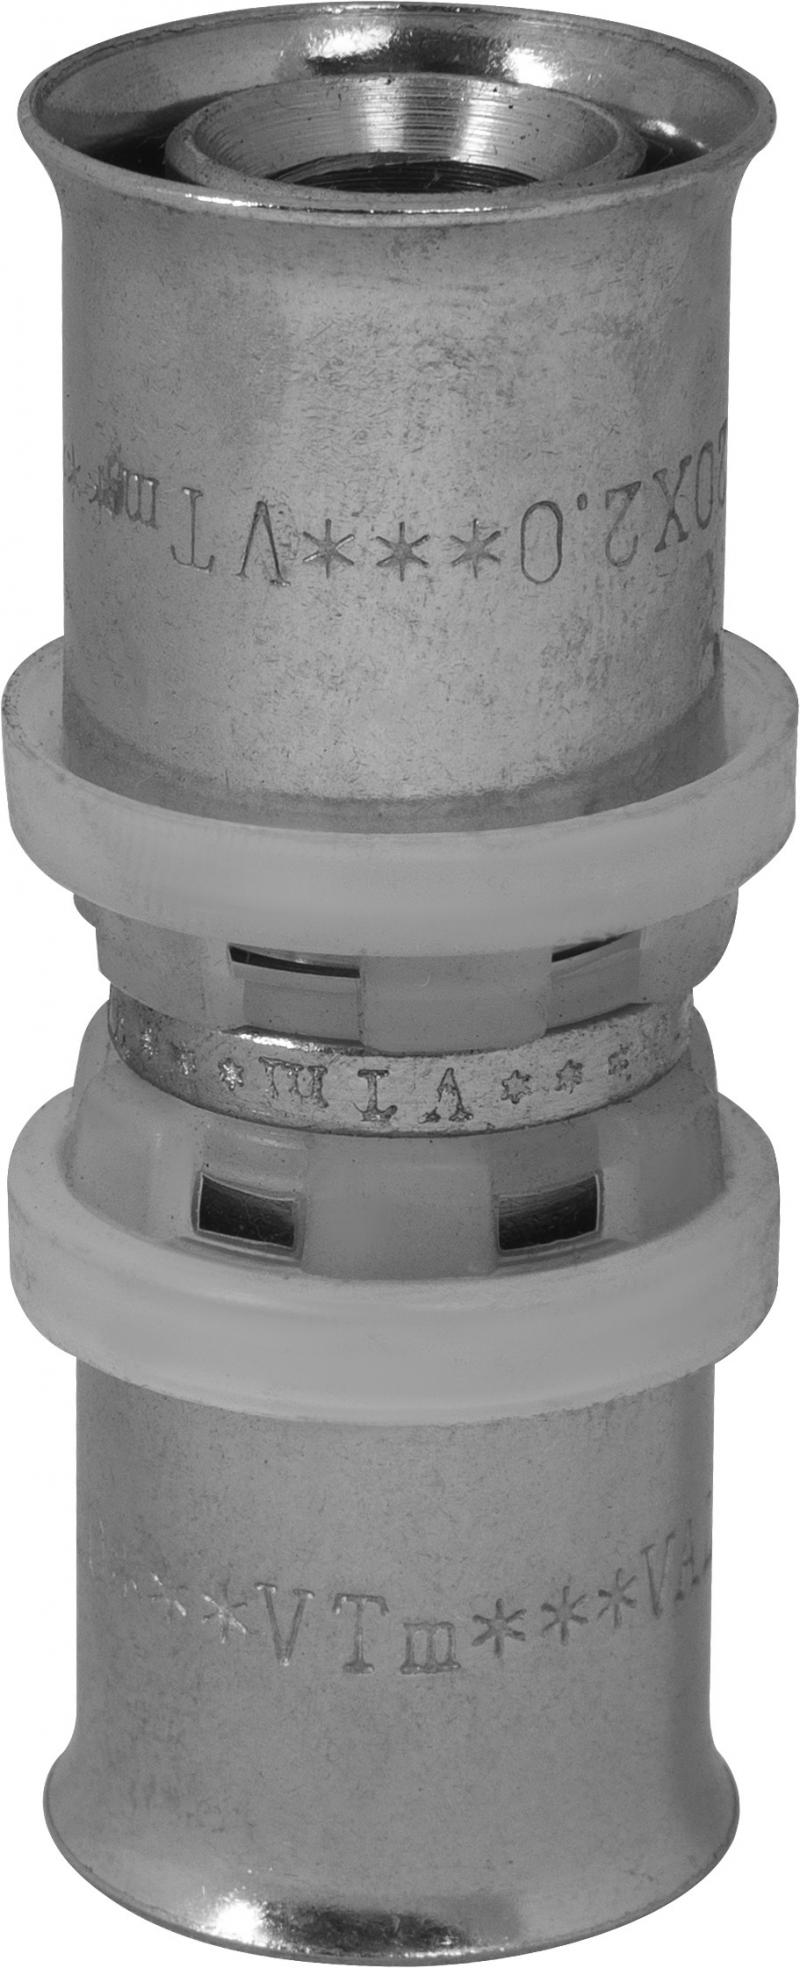 Соединитель пресс Valtec 20х20 мм никелированная латунь VTm.203.N.002020